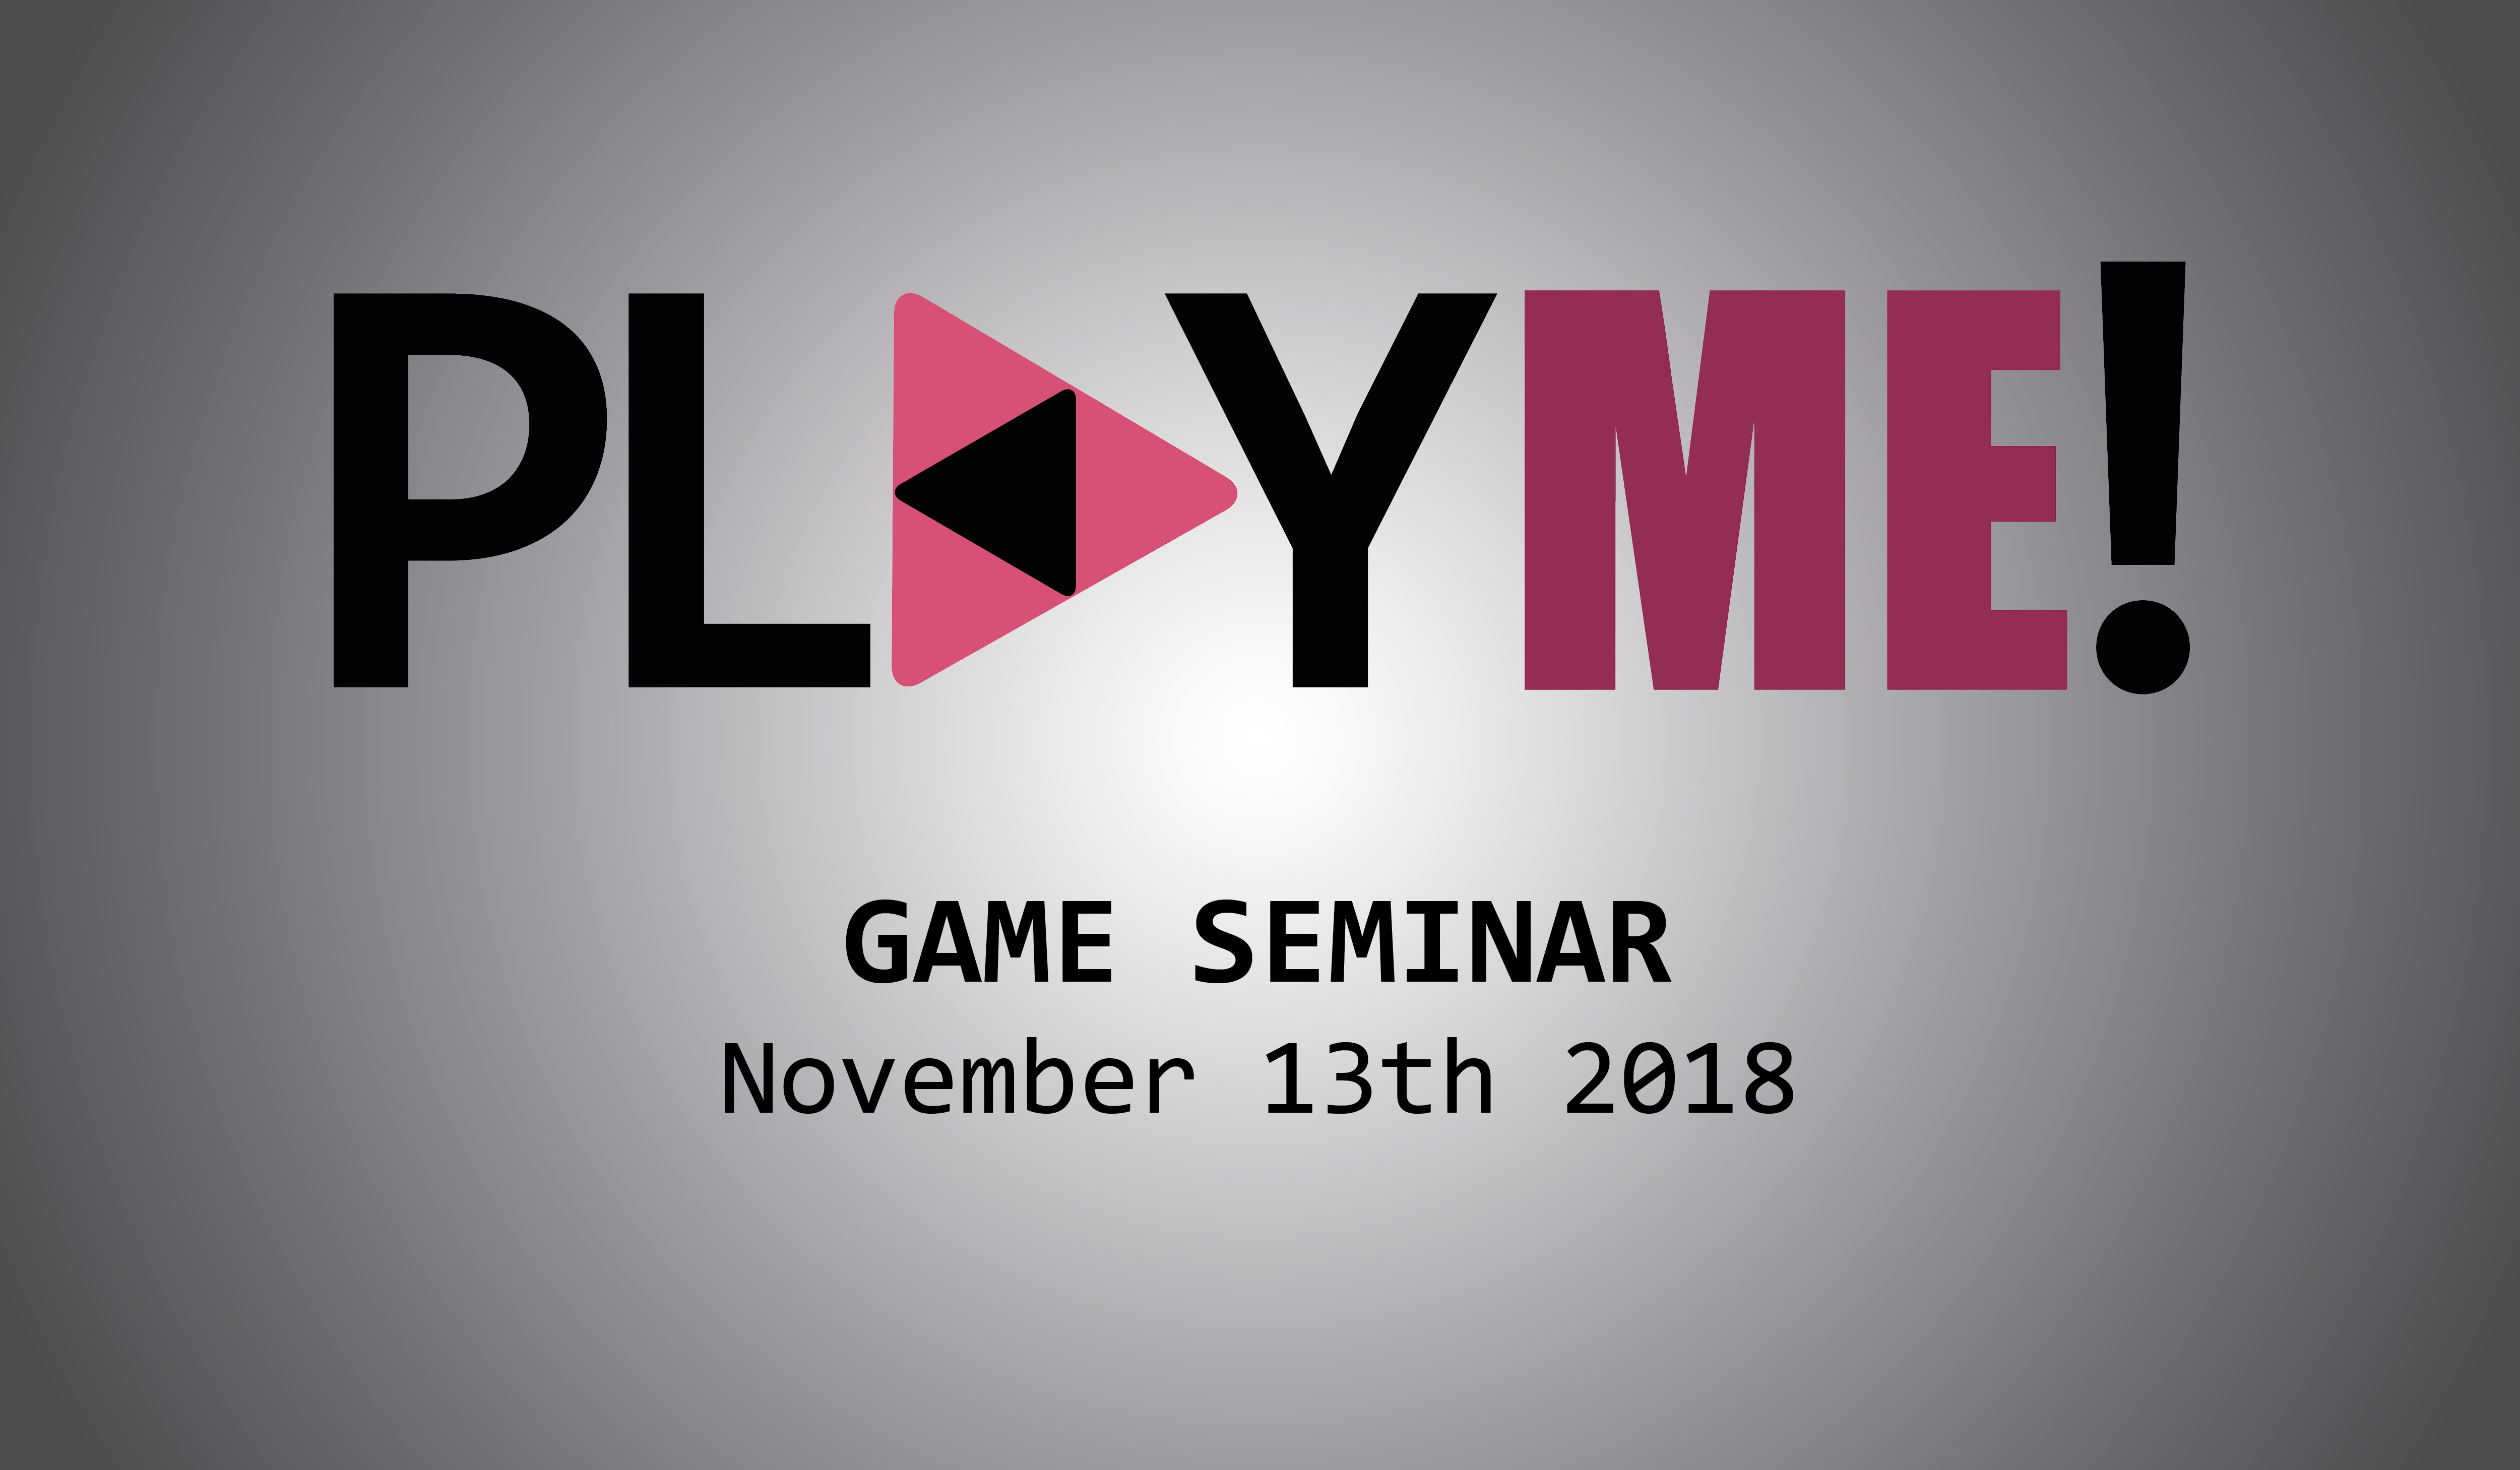 play-me-game-seminar-det-danske-filminstitut